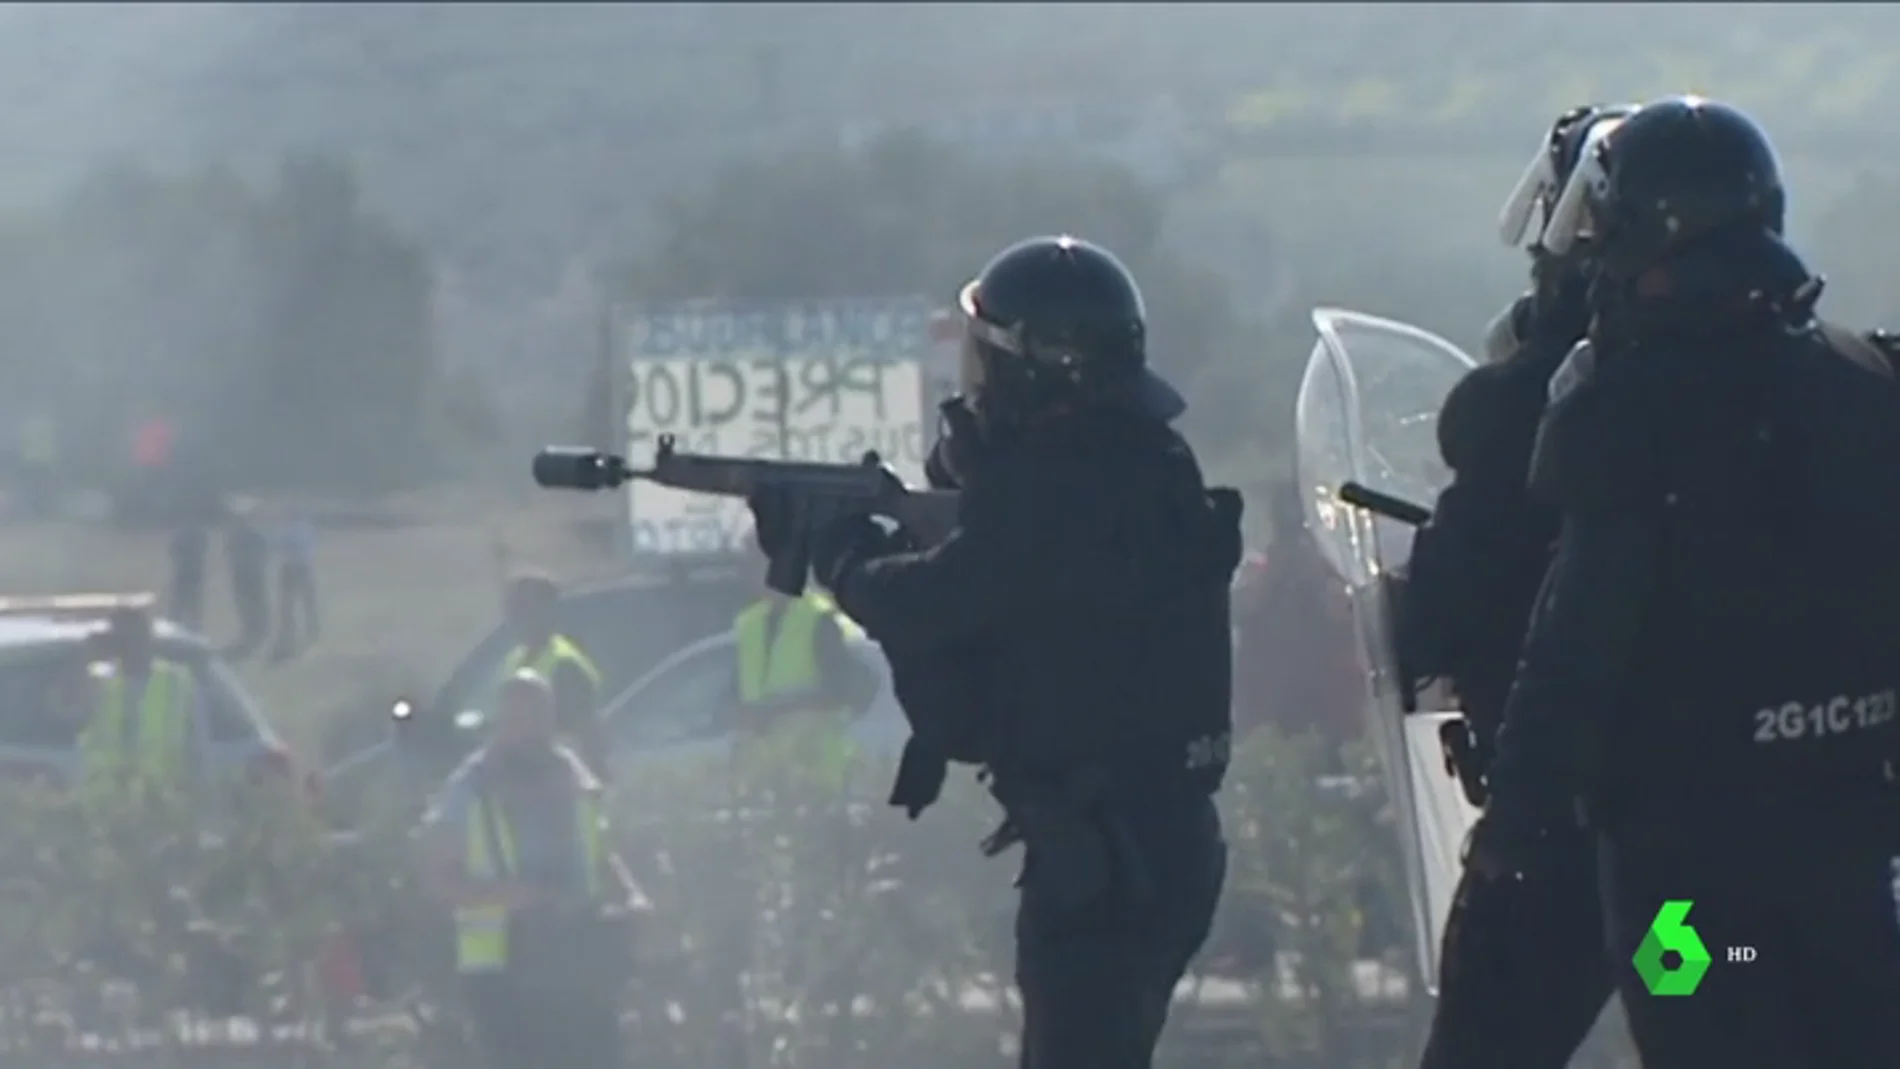 VÍDEO REEMPLAZO - Antidisturbios lanzan botes de humo para dispersar a "radicales" que protestaban en Lucena por la situación de los agricultores